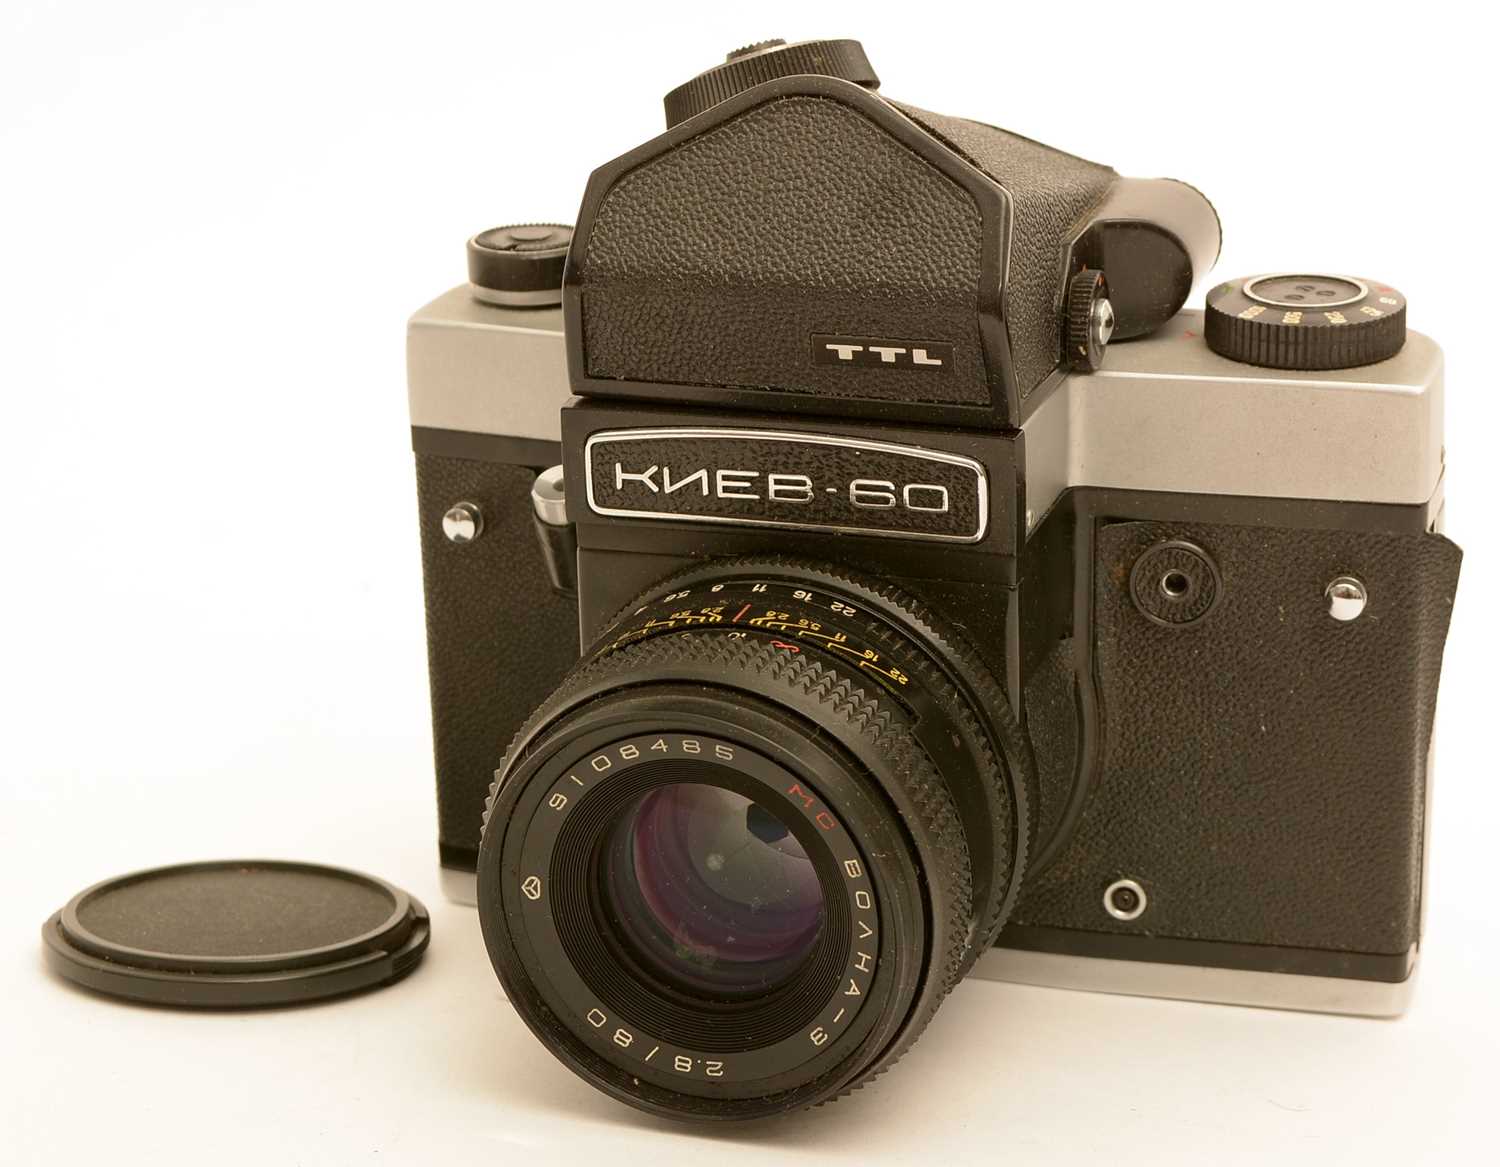 Lot 788 - A Kiev 60 TTL medium format SLR film camera